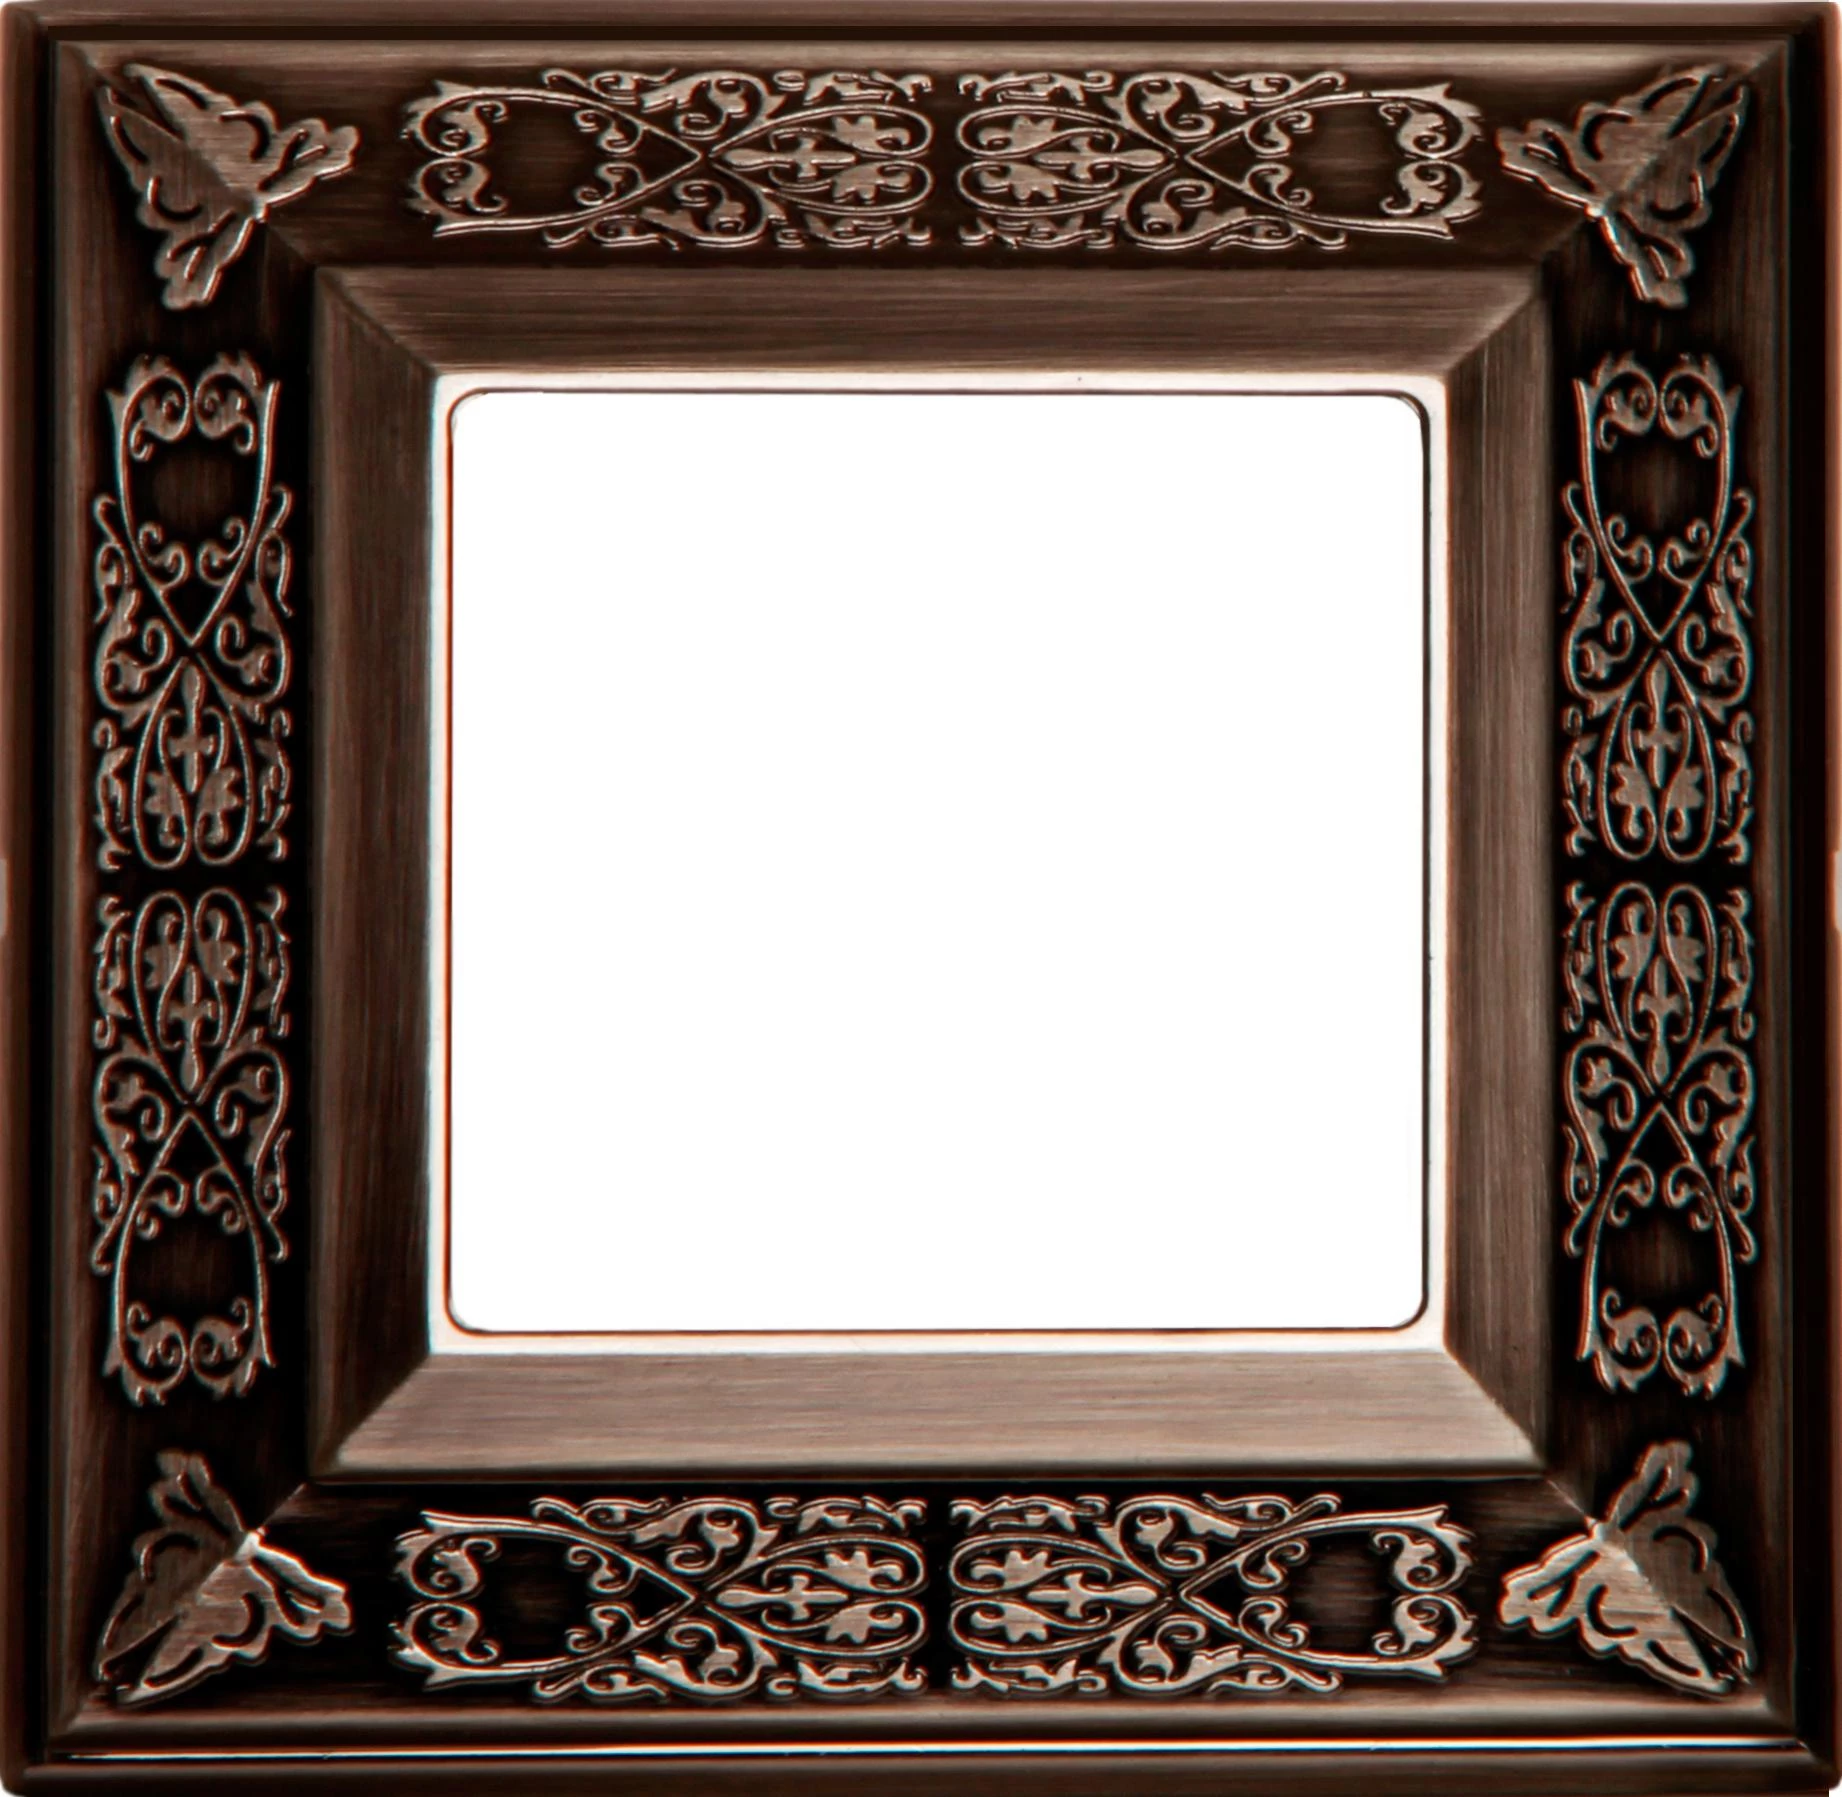  артикул FD01411CO название Рамка 1-ая (одинарная), цвет Состаренная медь, Granada, Fede